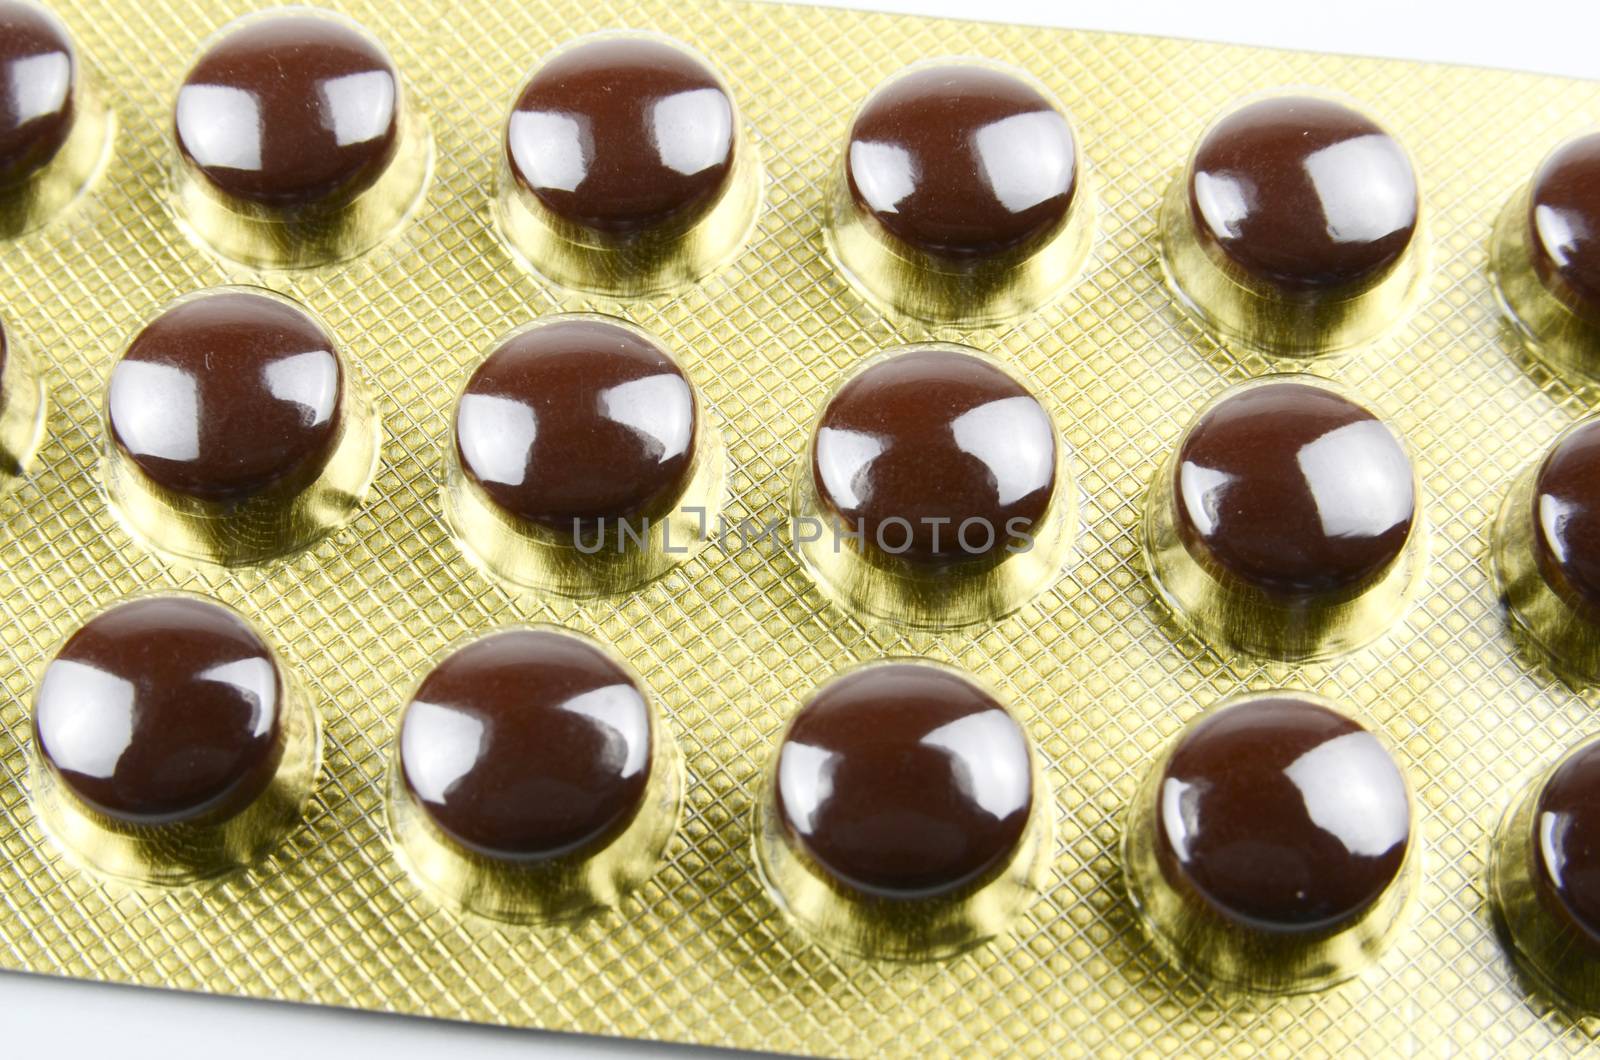 Blister packs of medication pills